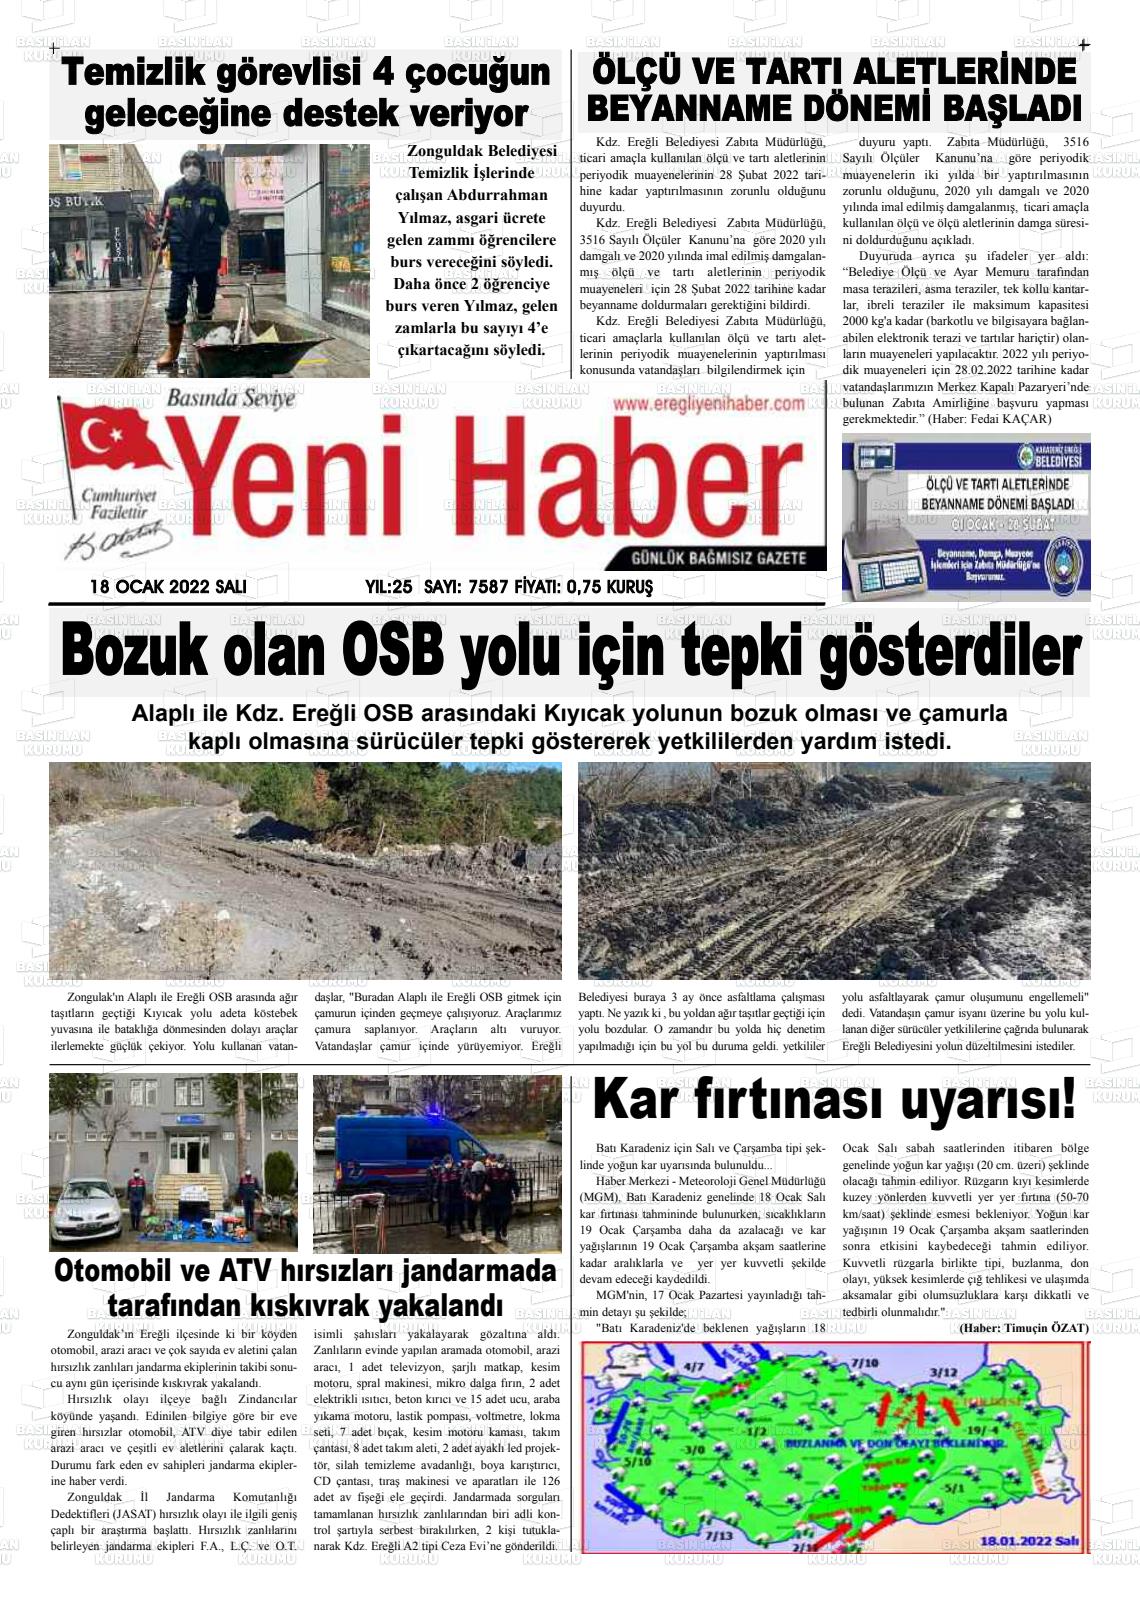 18 Ocak 2022 Ereğli Yeni Haber Gazete Manşeti